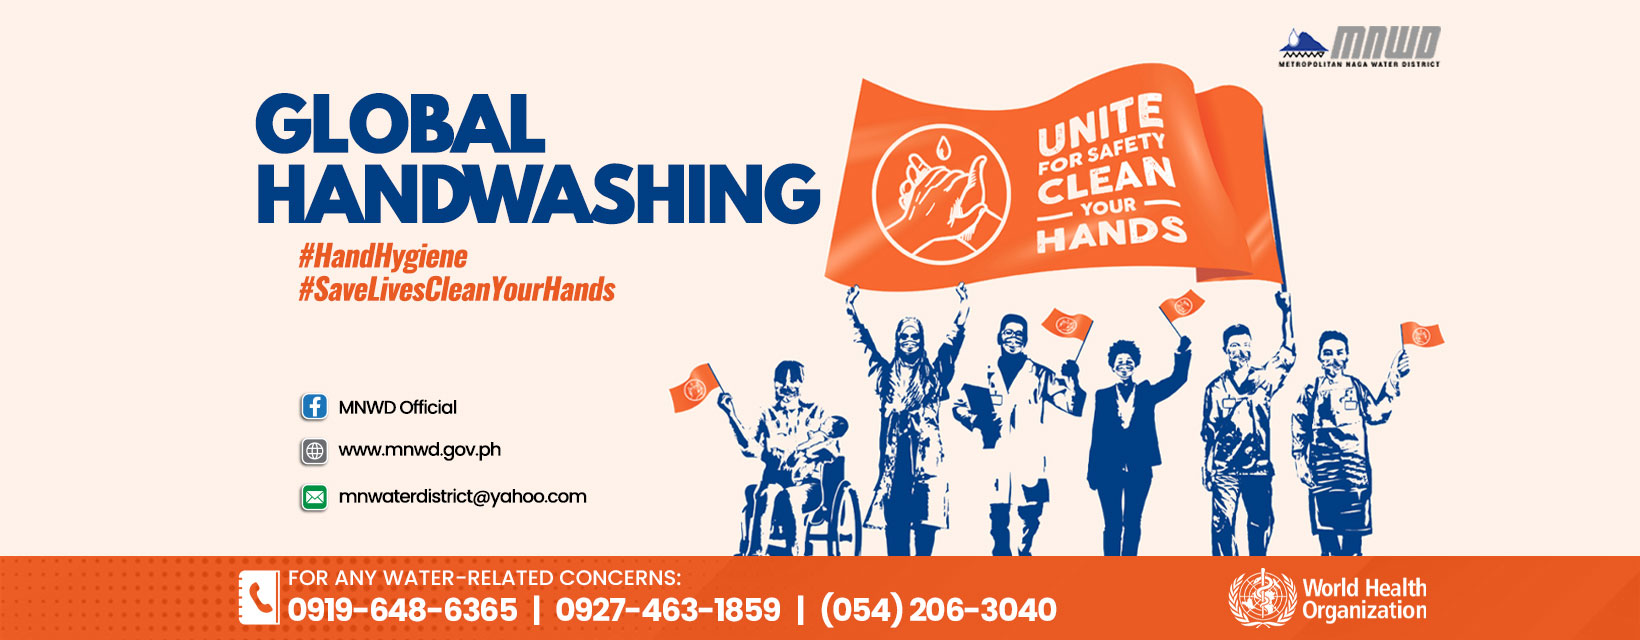 Global-Handwashing